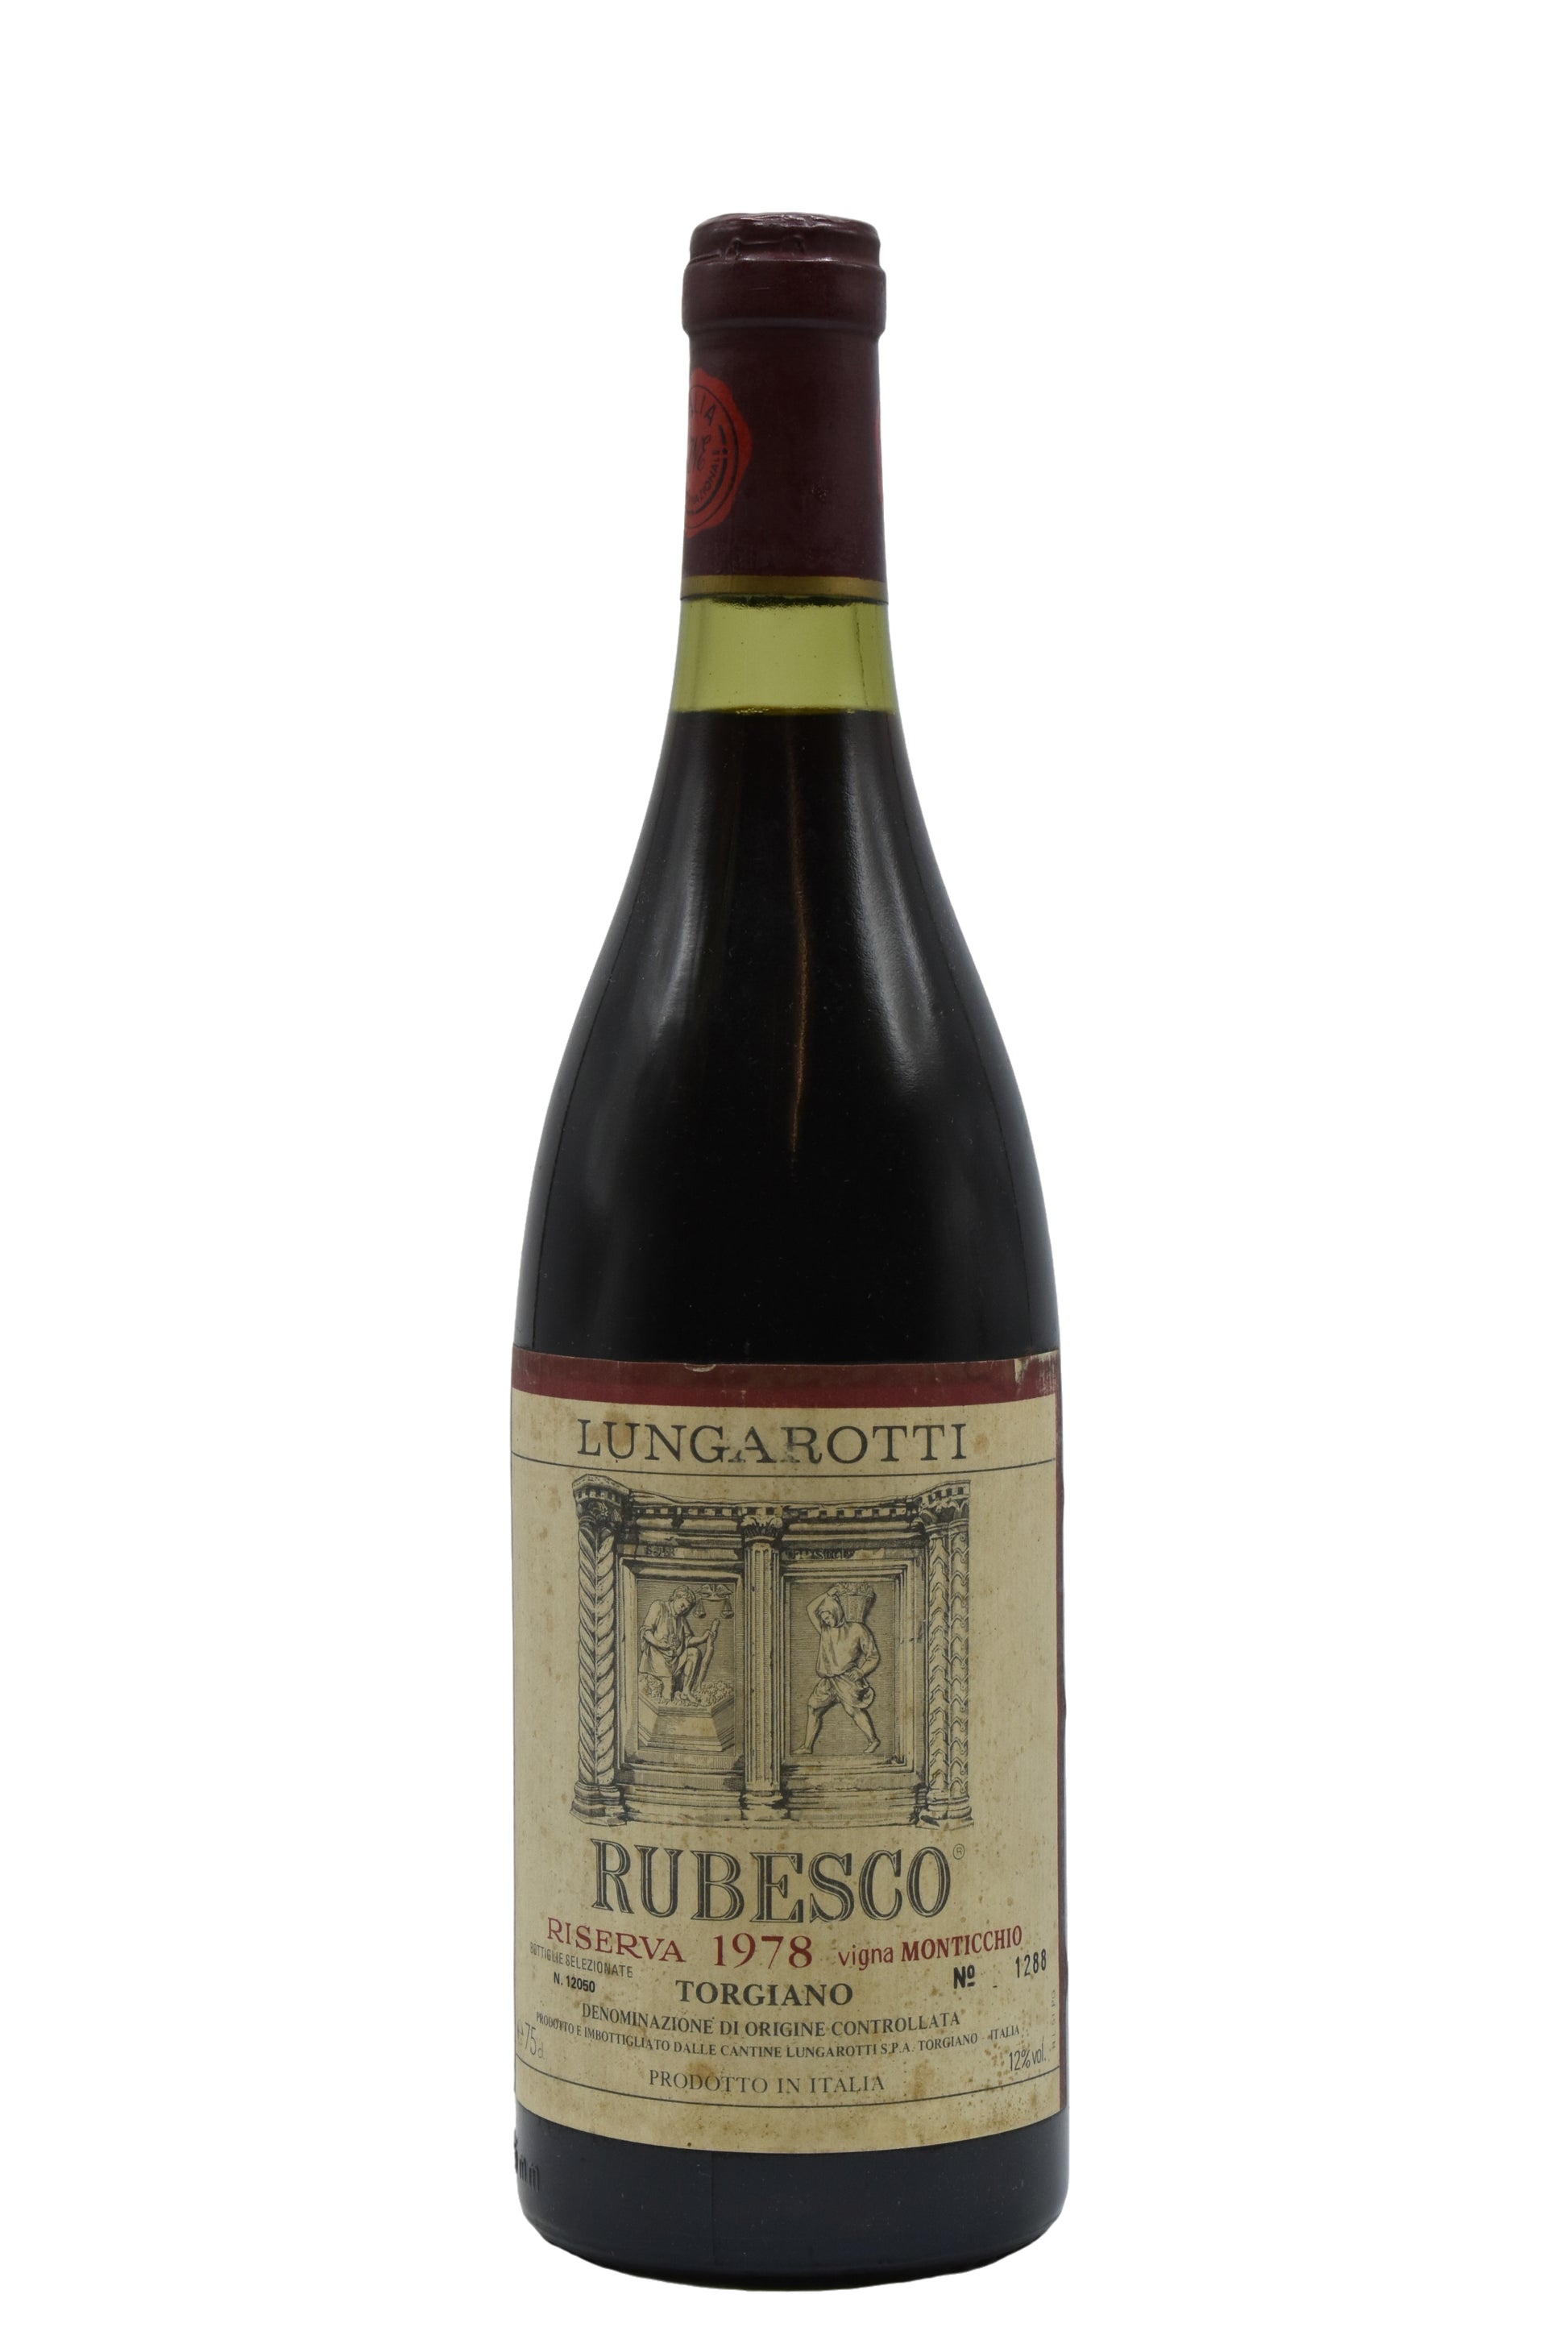 1978 Lungarotti, Rubesco, Torgiano Riserva Vigna Monticchio 750ml - Walker Wine Co.